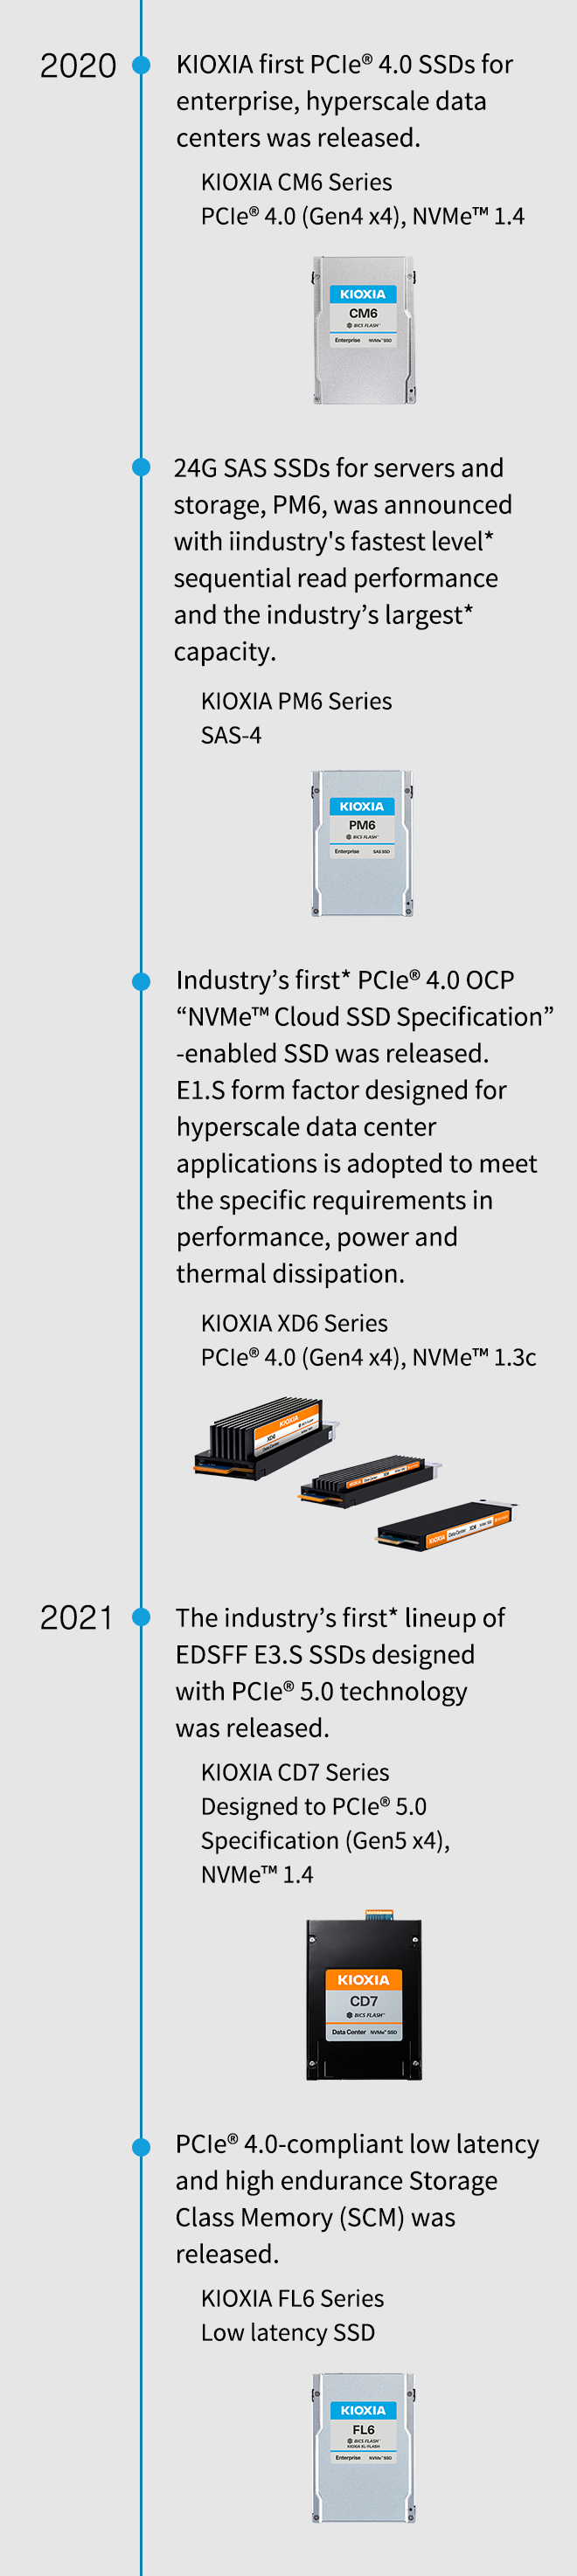 2020. A KIOXIA piacra dobta az első PCIe® 4.0 SSD-ket a vállalatok és a hiperskálás adatközpontok számára. KIOXIA CM6 sorozatú PCIe® 4.0 (Gen4 x4), NVMe™ 1.4. Bejelentettük a szerverekhez és tárolókhoz készült 24G SAS SSD-ket, a PM6-ot az iparág leggyorsabb szintű* szekvenciális olvasási teljesítményével és az iparág legnagyobb* kapacitásával. KIOXIA PM6 sorozat SAS-4. A Kioxia bemutatja az iparág első PCIe® 4.0 OCP „NVMe™ felhőalapú specifikáció”-kompatibilis SSD-jét A teljesítmény, erő és hőelvezetés specifikus követelményeinek való megfelelés érdekében az E1.S formátumot hiperskálás adatközpont-alkalmazásokhoz tervezték. KIOXIA XD6 sorozatú PCIe® 4.0 (Gen4 x4), NVMe™ 1.3c. 2021. Megjelent az iparág első* EDSFF E3.S SSD termékcsaládja, amely PCIe® 5.0 technológiával készült. KIOXIA CD7 sorozat PCIe® 5.0 specifikációhoz (Gen5 x4), NVMe™ 1.4. A PCIe® 4.0-kompatibilis, alacsony késleltetésű és nagy állóképességű tárolóosztály-memória (SCM) kiadásra került. KIOXIA FL6 sorozatú, alacsony késleltetésű SSD